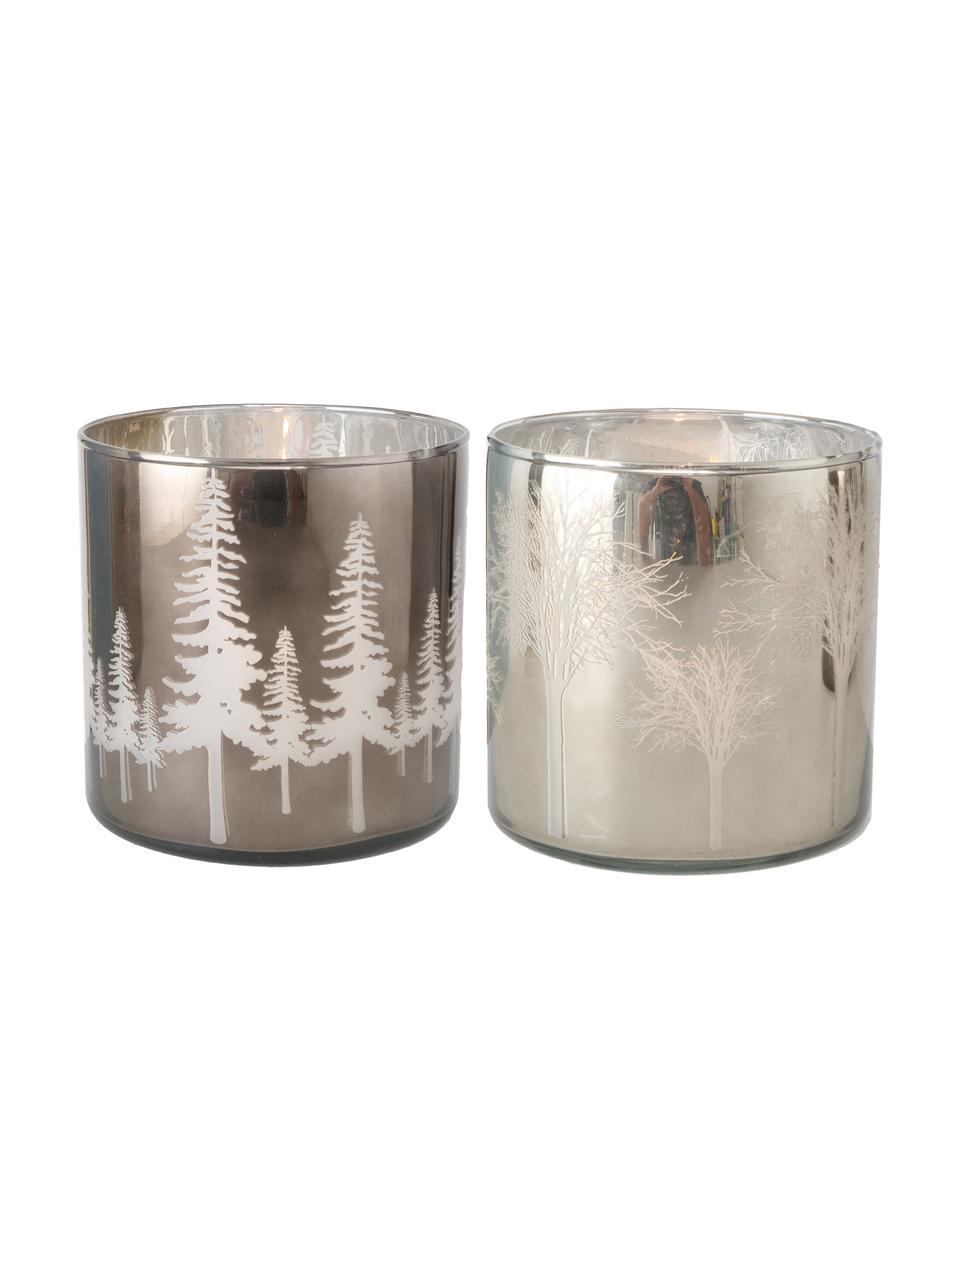 Windlichtenset Skove, 2-delig, Gelakt glas, Zilverkleurig, grijs, glanzend, Ø 15 cm